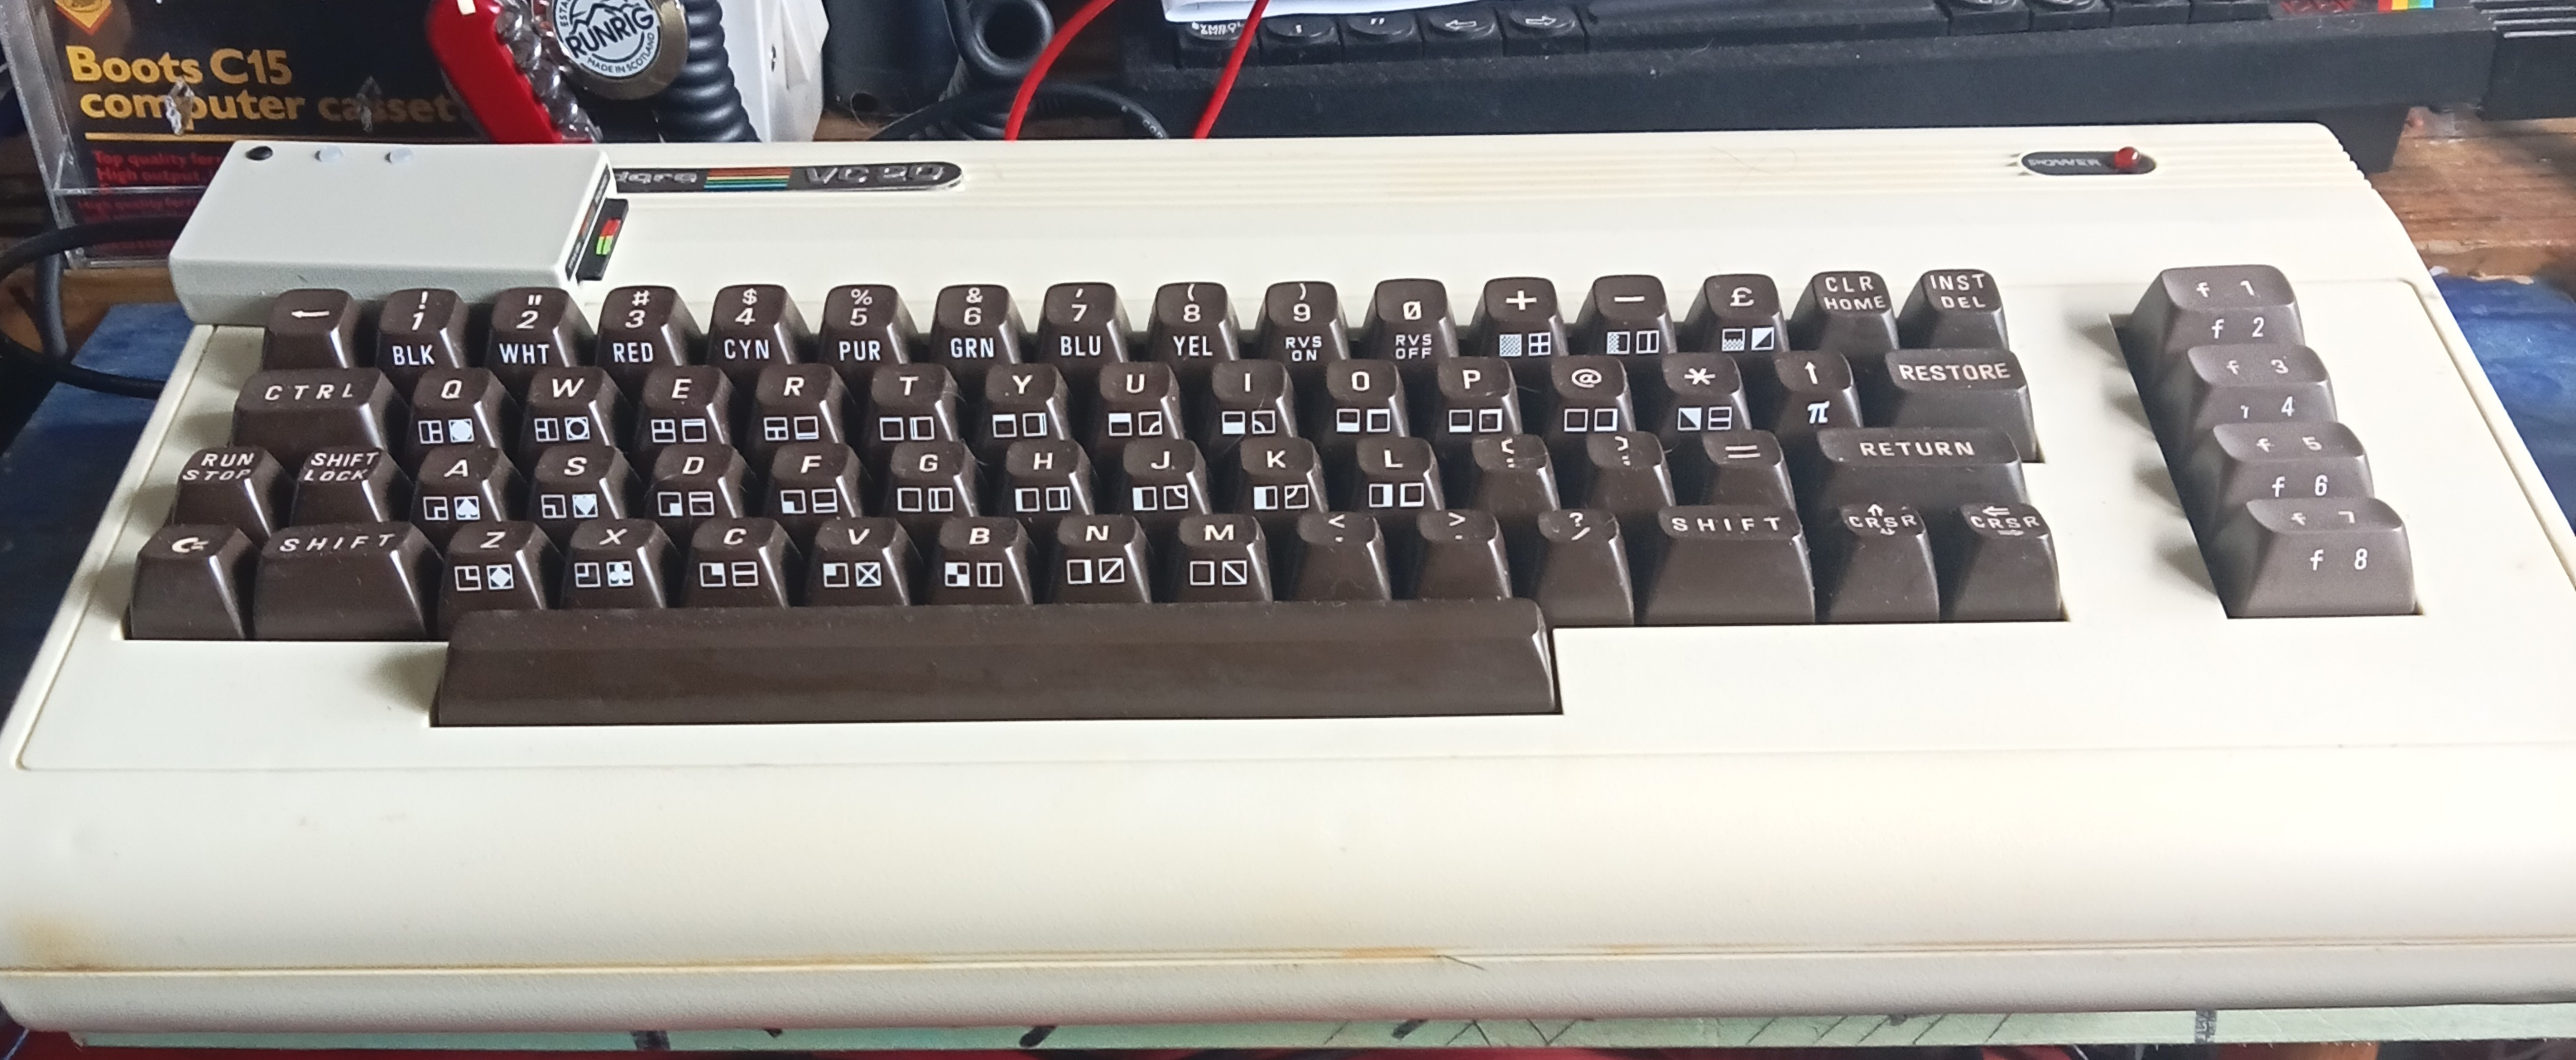 Commodore Vic 20